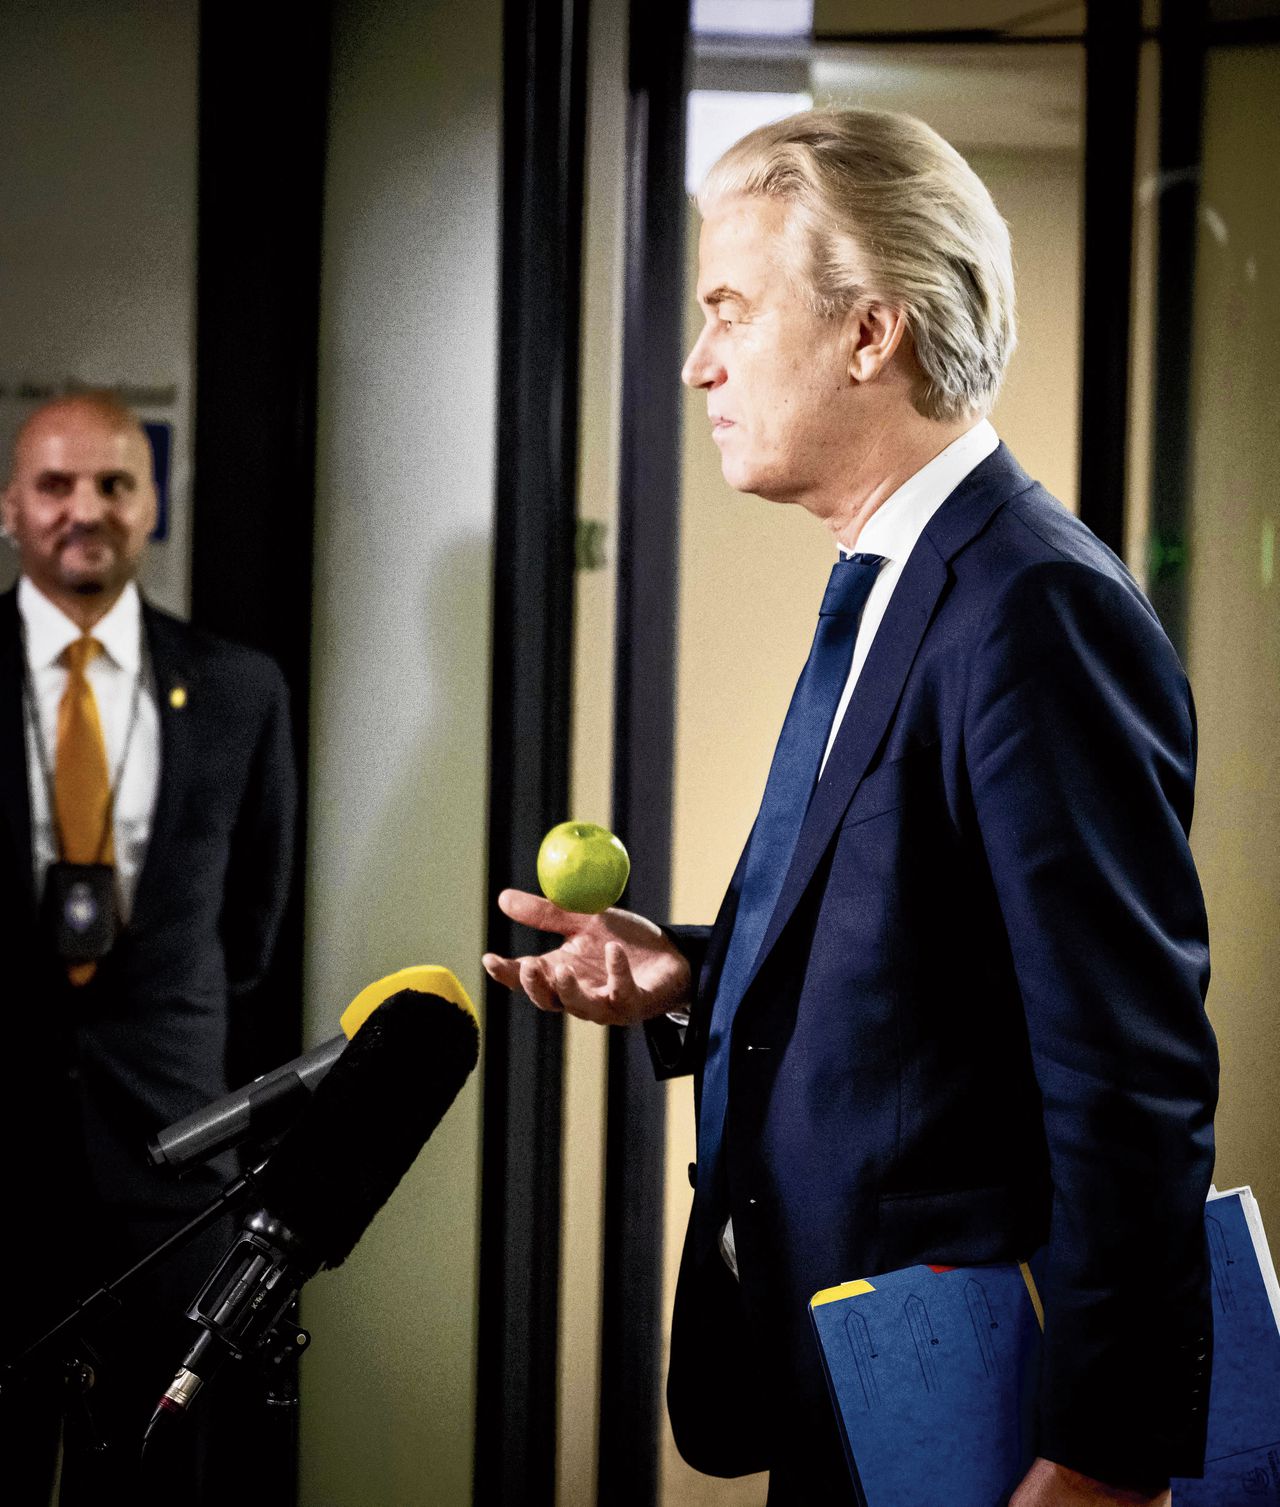 De PVV’ers verzetten zich jarenlang tegen de macht, en zoeken nu een nieuwe rol 